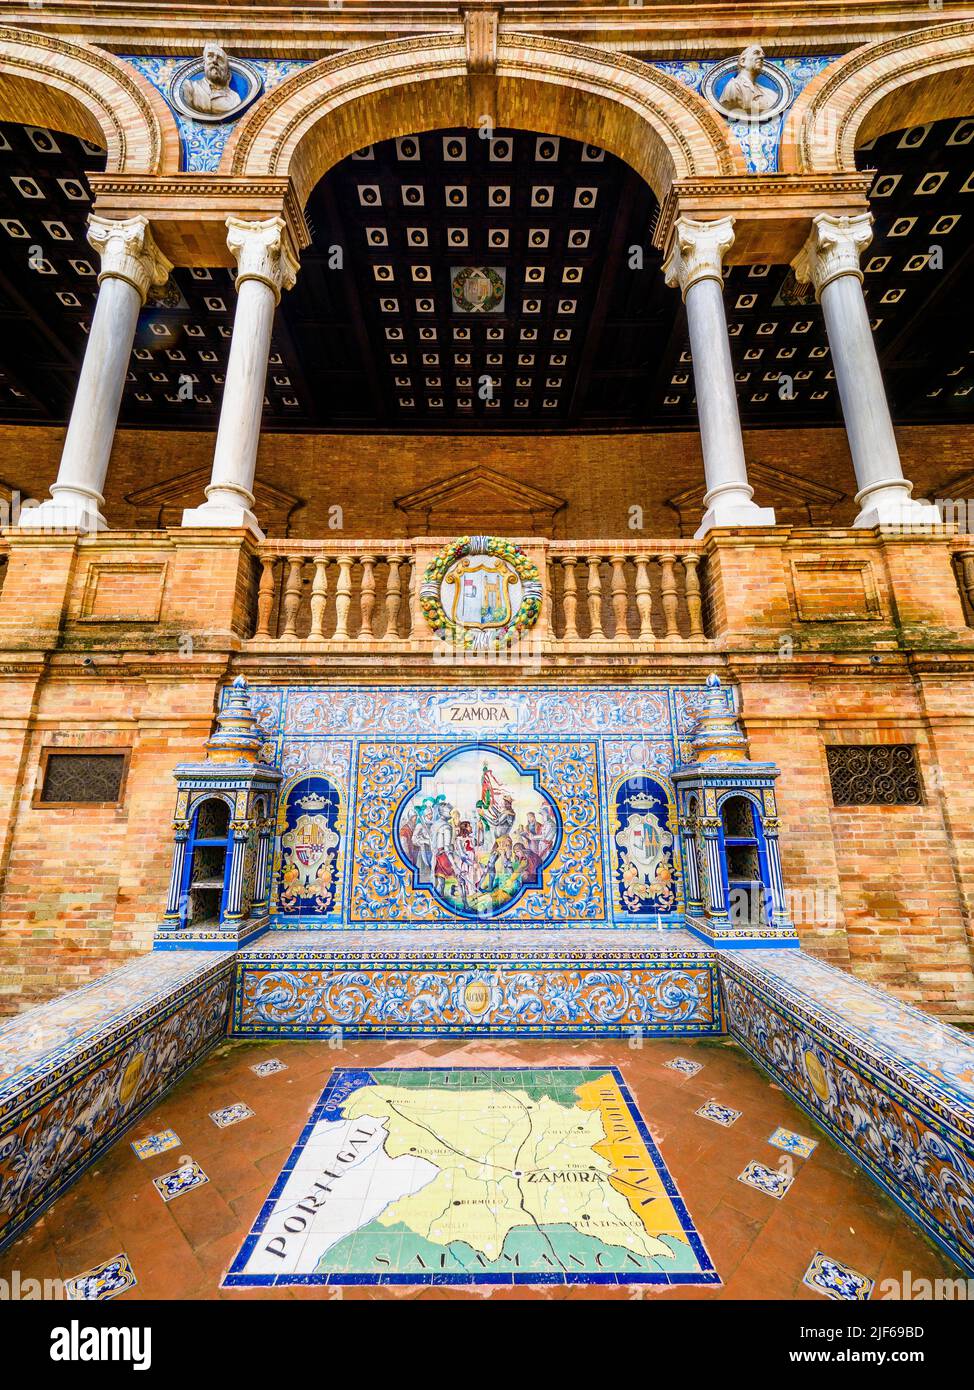 Detalle de la provincia española de zamora en azulejos a lo largo de las paredes del edificio Plaza de España - Sevilla, España Foto de stock